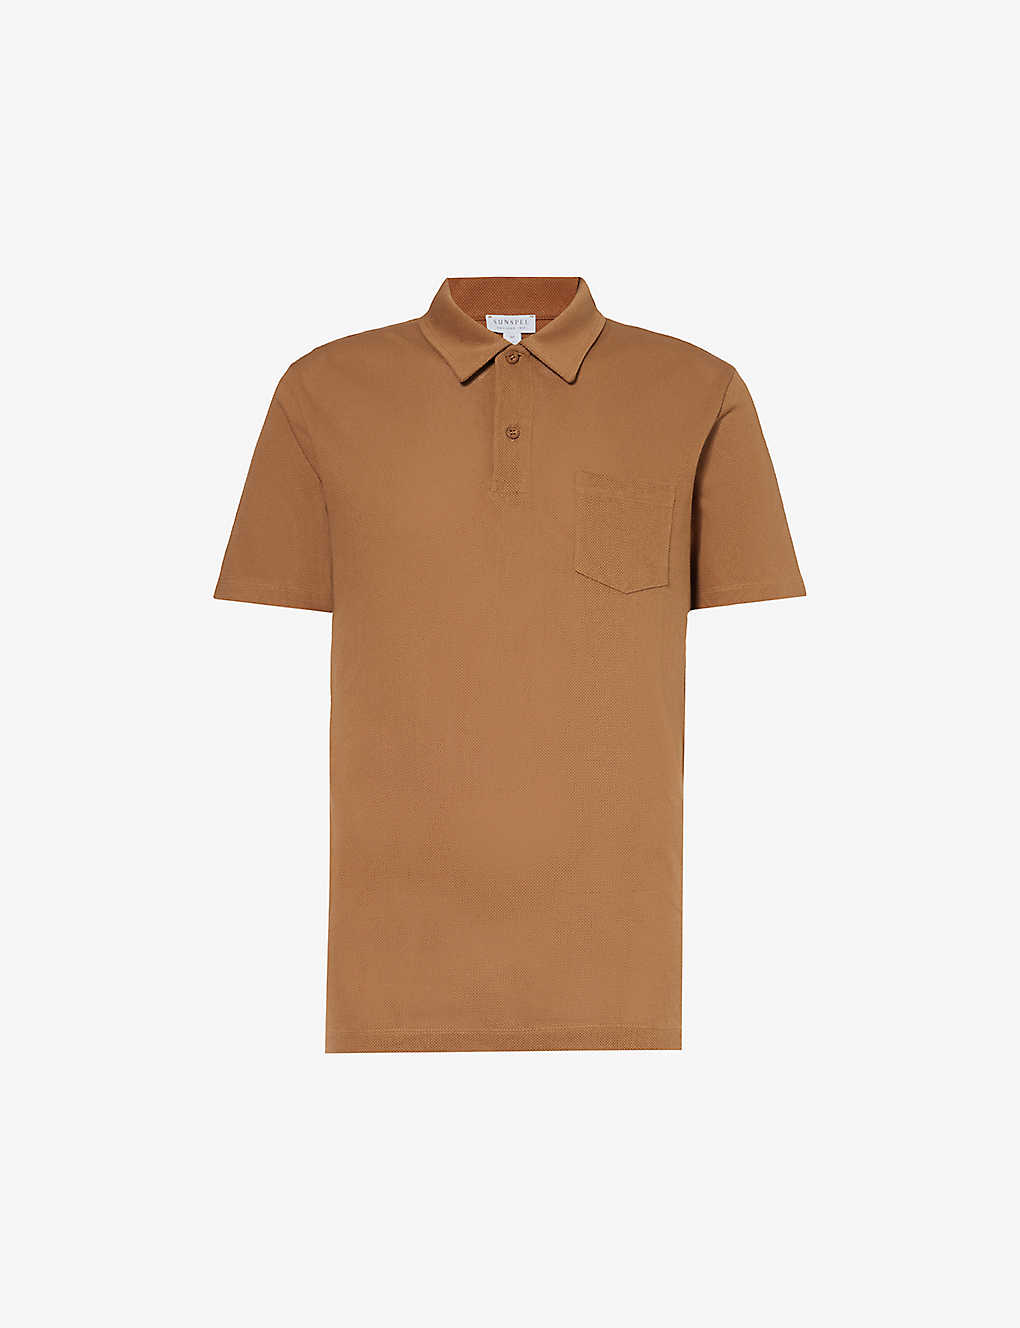 Sunspel Mens Dark Camel24 Riviera Patch-pocket Cotton Polo Shirt